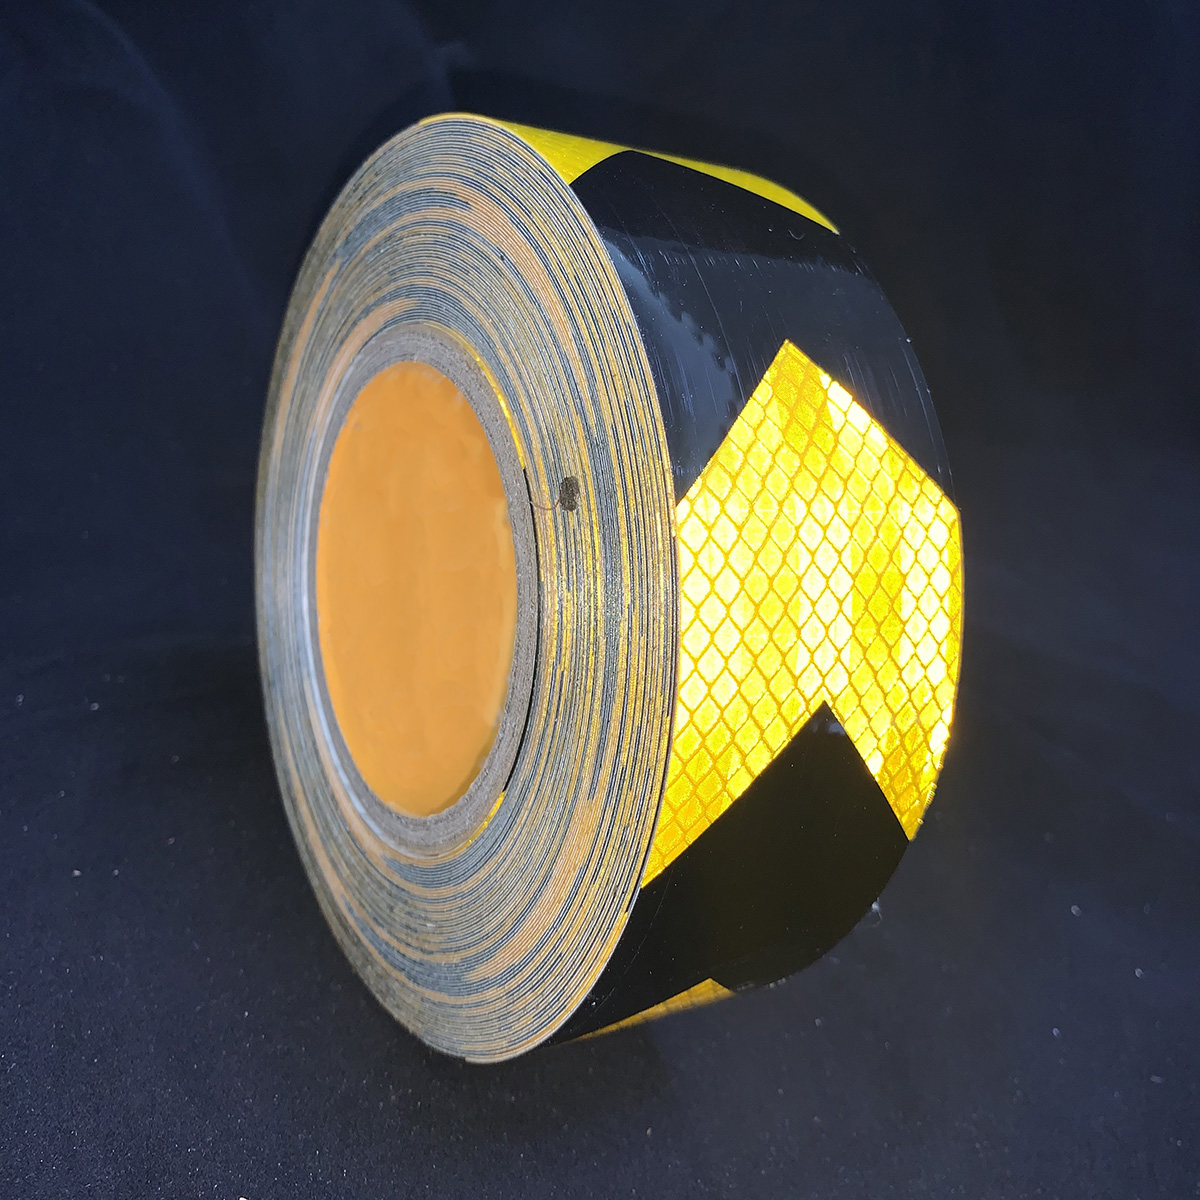 Flecha microprismática PET de 5cm x 25m tipo reflectante lámina negra + dorada